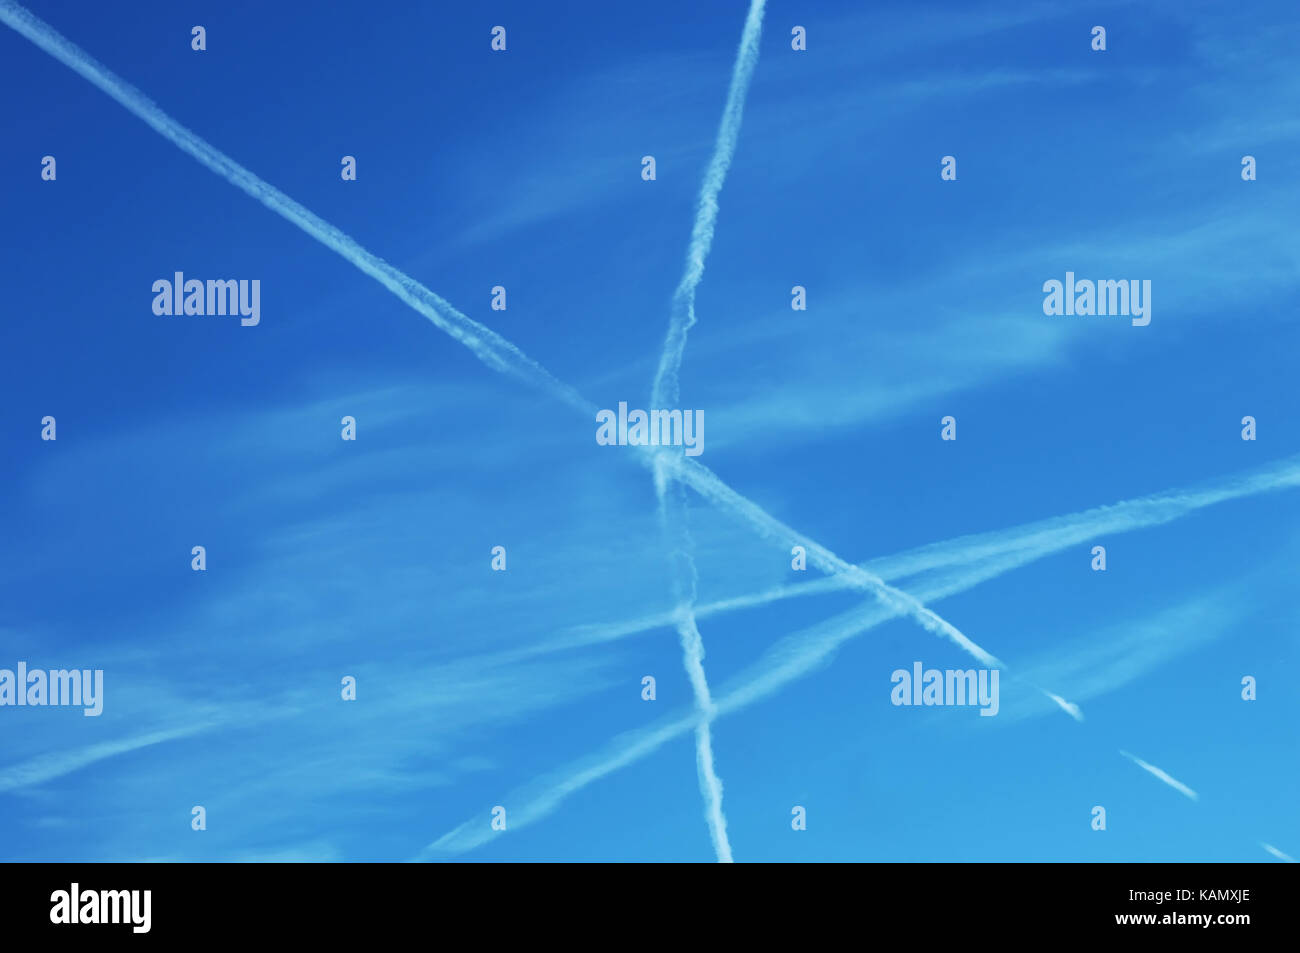 Jet Flug Muster bilden ein X in den Himmel. Geometrische mathematische Prinzip wird von der Kreuzung jet stream dargestellt, schneidenden Linien. Stockfoto